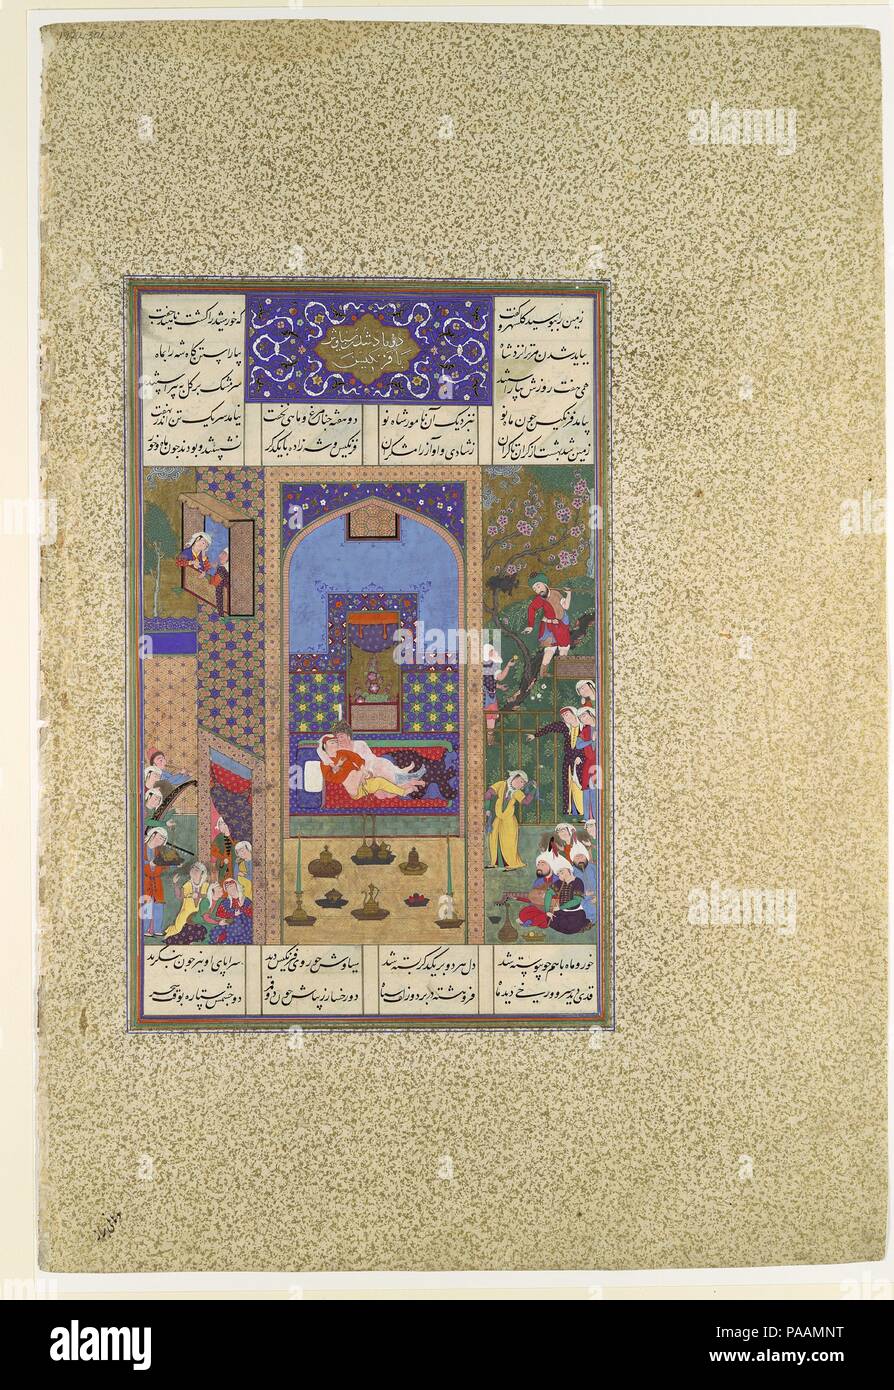 " Il matrimonio di Siyavush e Farangis', folio 185v dal Shahnama (Libro dei Re) di Shah Tahmasp. Artista: dipinto attribuito al Qasim ibn 'Ali (active ca. 1525-60). Autore: Abu'l Qasim Firdausi (935-1020). Dimensioni: Pittura: H. 11 3/8 in. (28,9 cm) W. 7 1/4 in. (18,4 cm) Pagina: H. 18 5/8 in. (47,3 cm) W. 12 5/8 in. (32,1 cm) tappeto: H. 22 a. (55,9 cm) W. 16 a. (40,6 cm). Direttore del workshop: Mir Musavvir (attivo 1525-60). Data: ca. 1525-30. Le circostanze del suo padre in vigore Siyavush, figlio dell'Iran Shah Kavus Kai, in esilio in Turan, la potenza vicini e chief ene Foto Stock